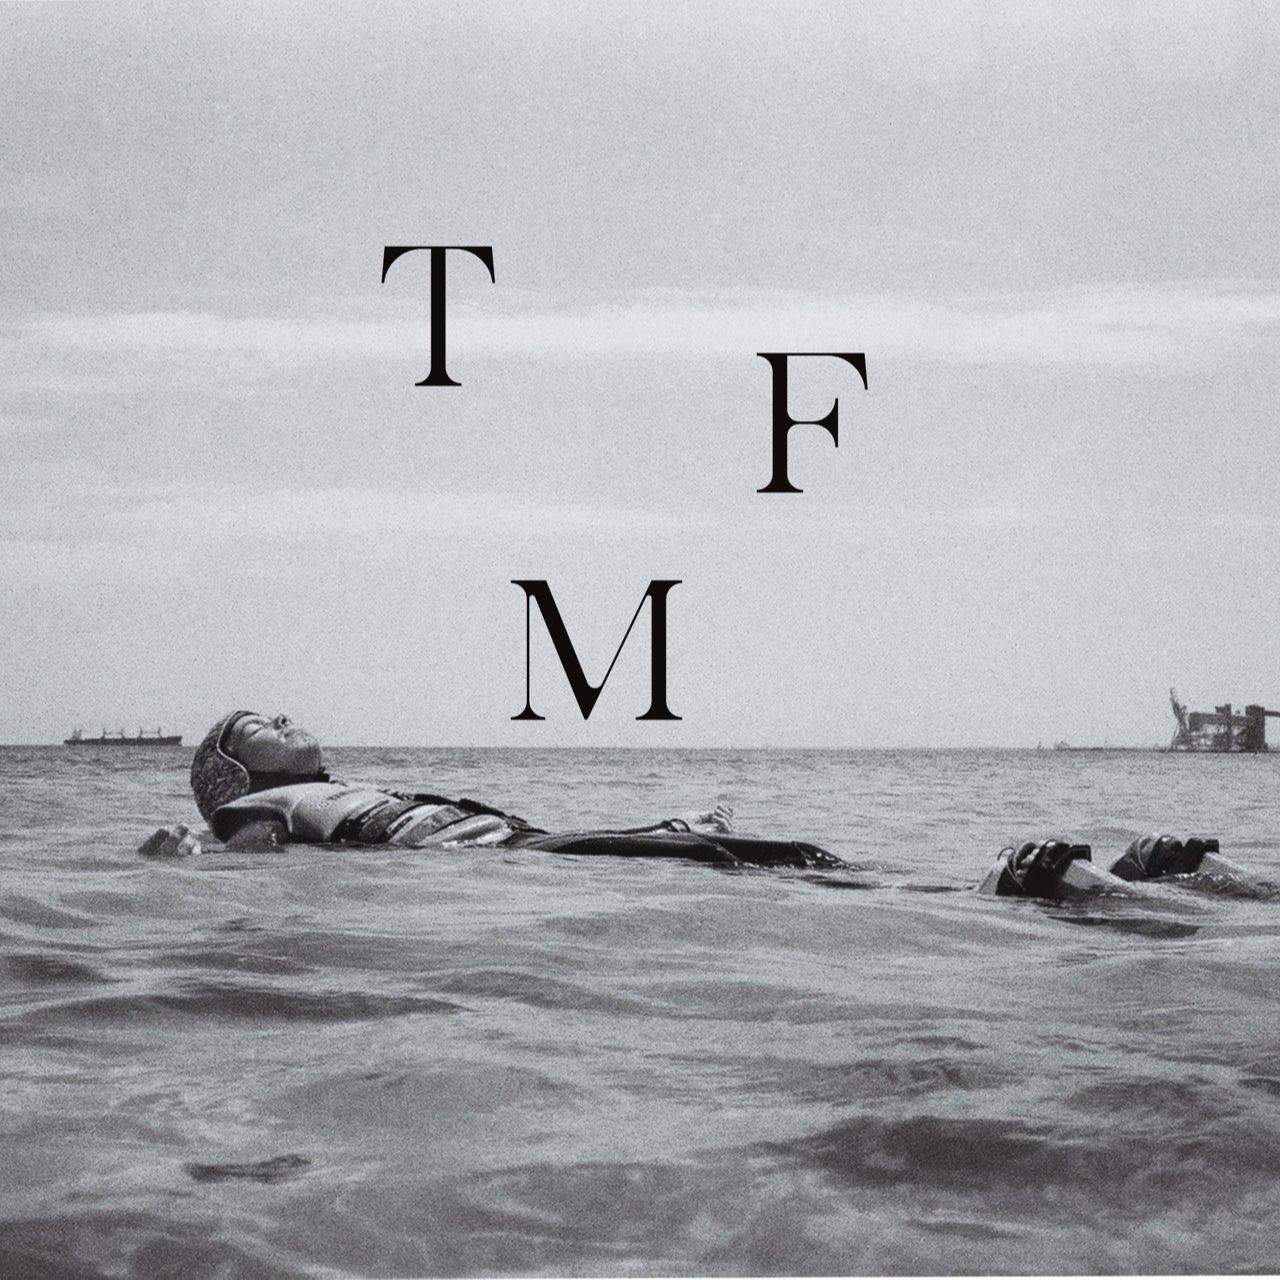 TFM's images